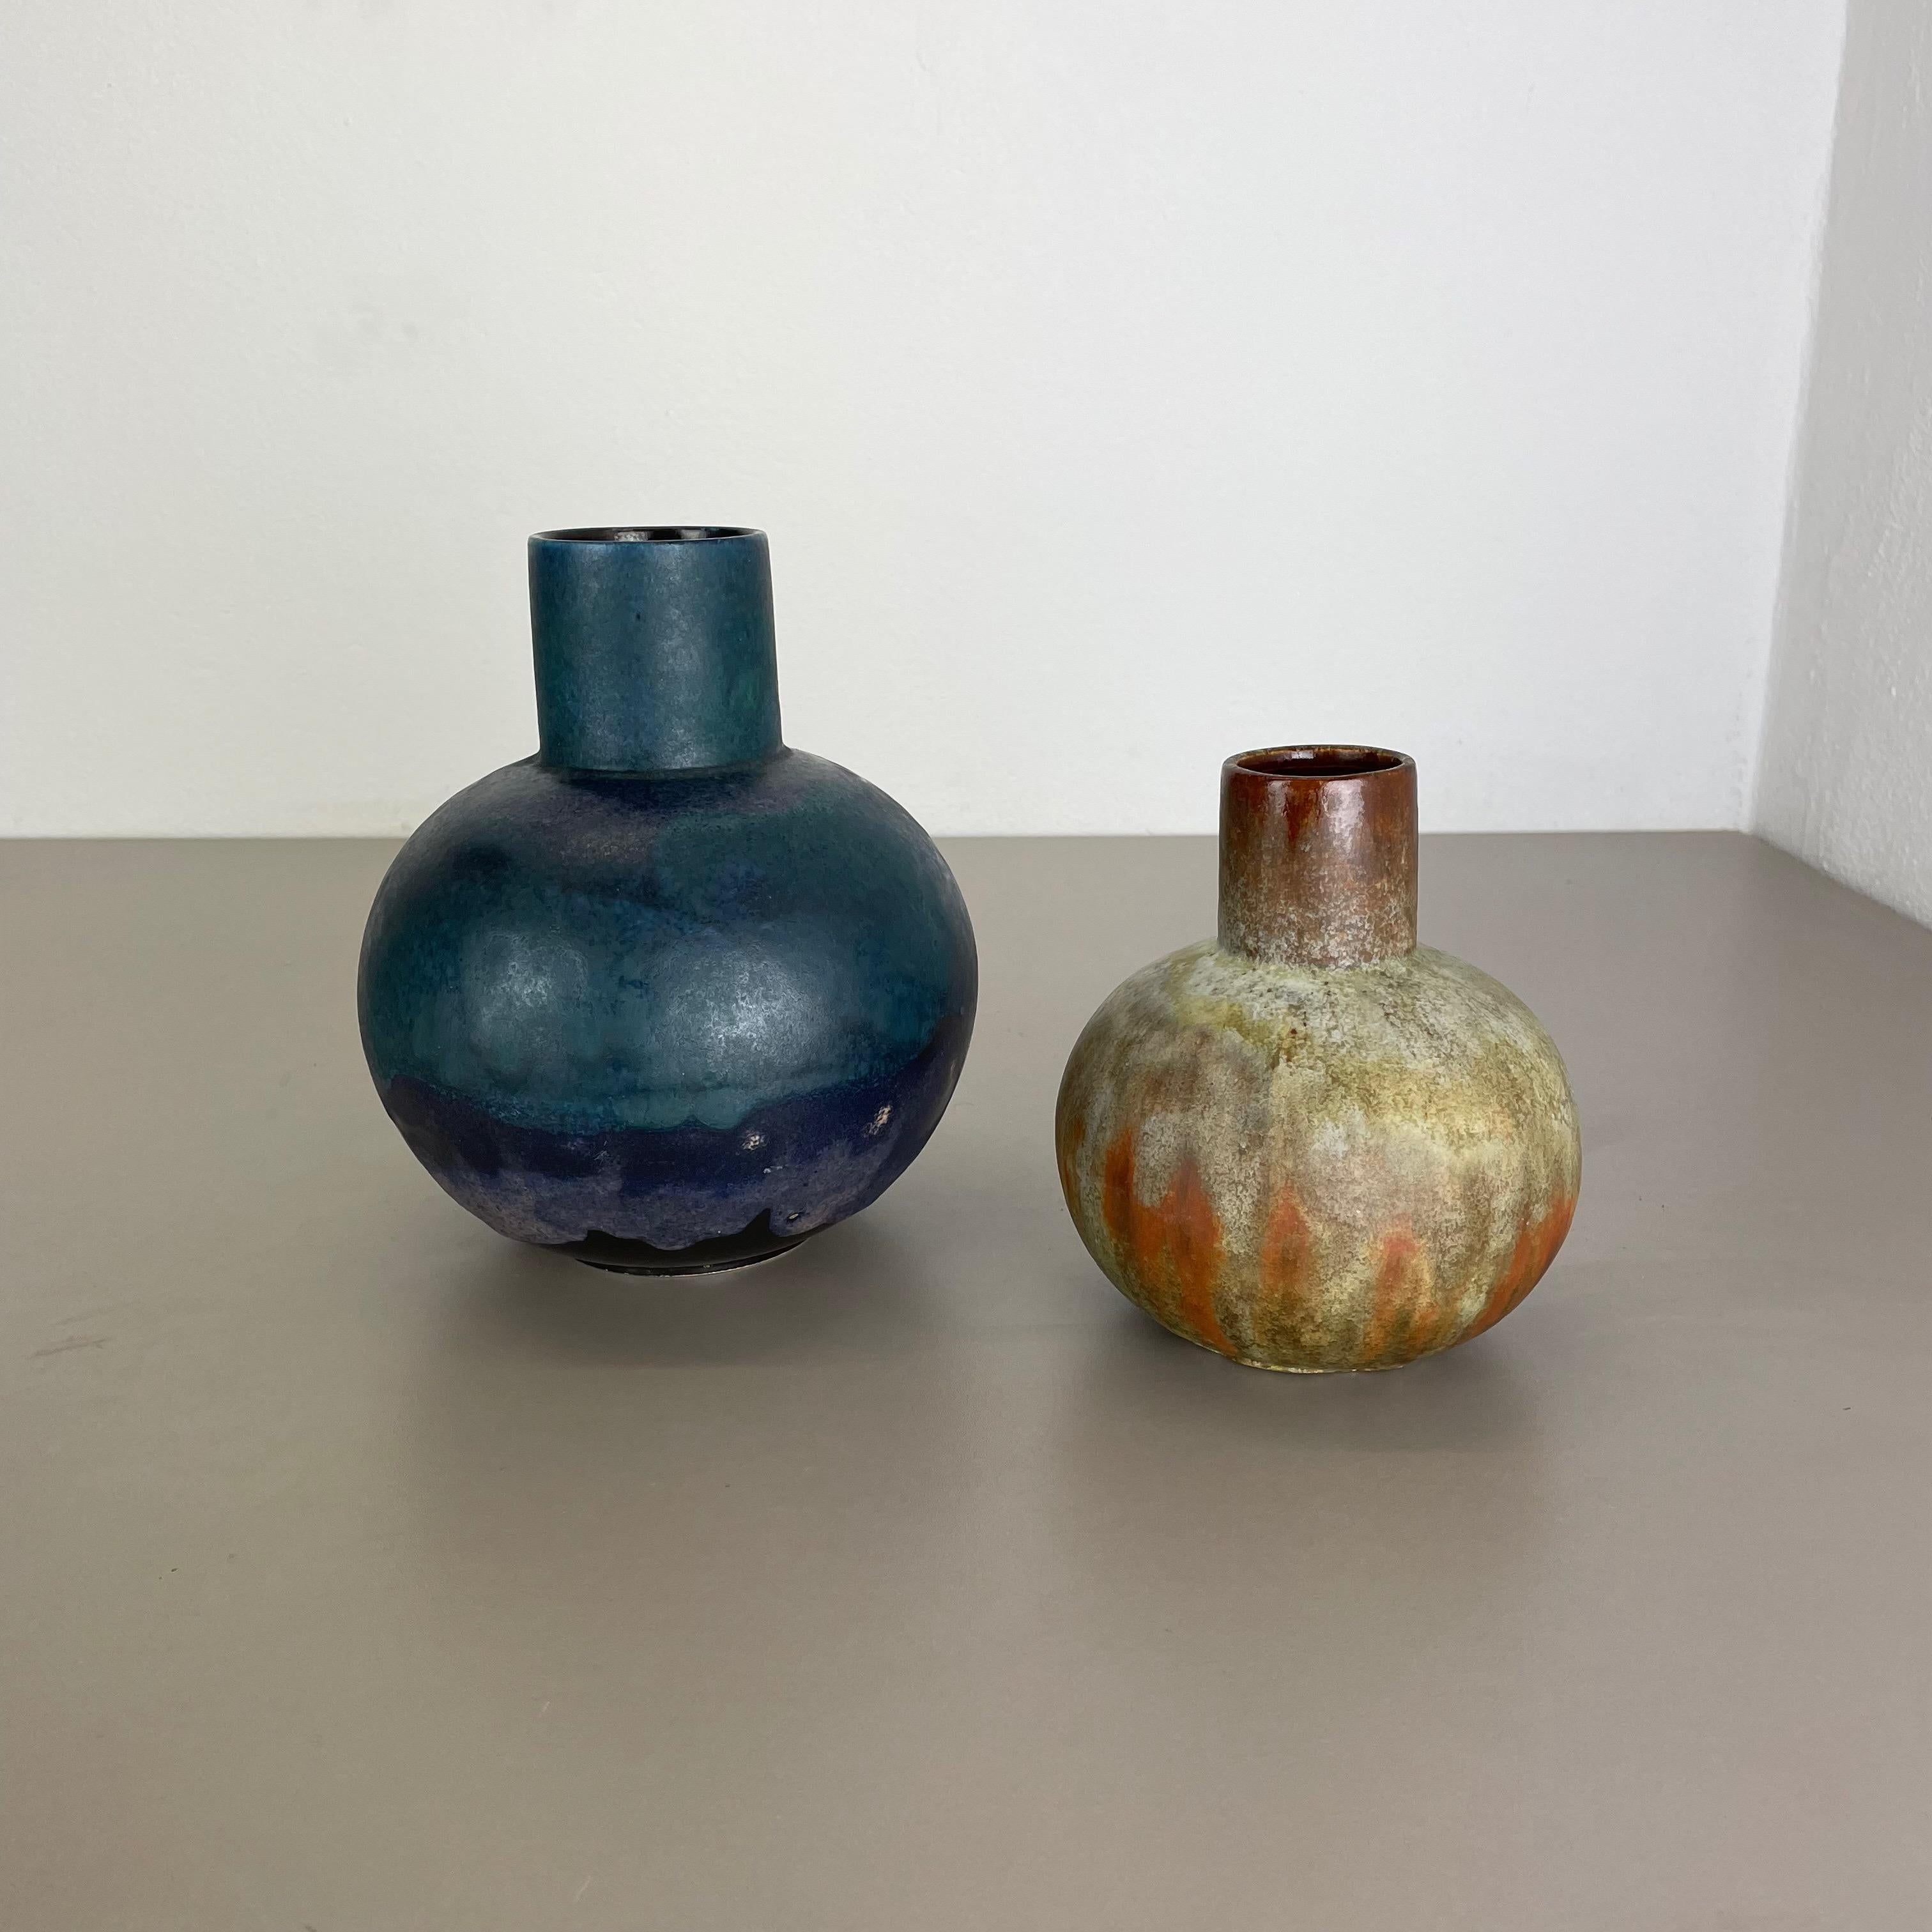 Article :

ensemble de 2 vases


Producteur :

Ruscha, Allemagne



Décennie :

1960s


Description :

Cet ensemble original de vases vintage a été conçu et produit dans les années 1960 par Ruscha en Allemagne. Cette offre contient un ensemble de